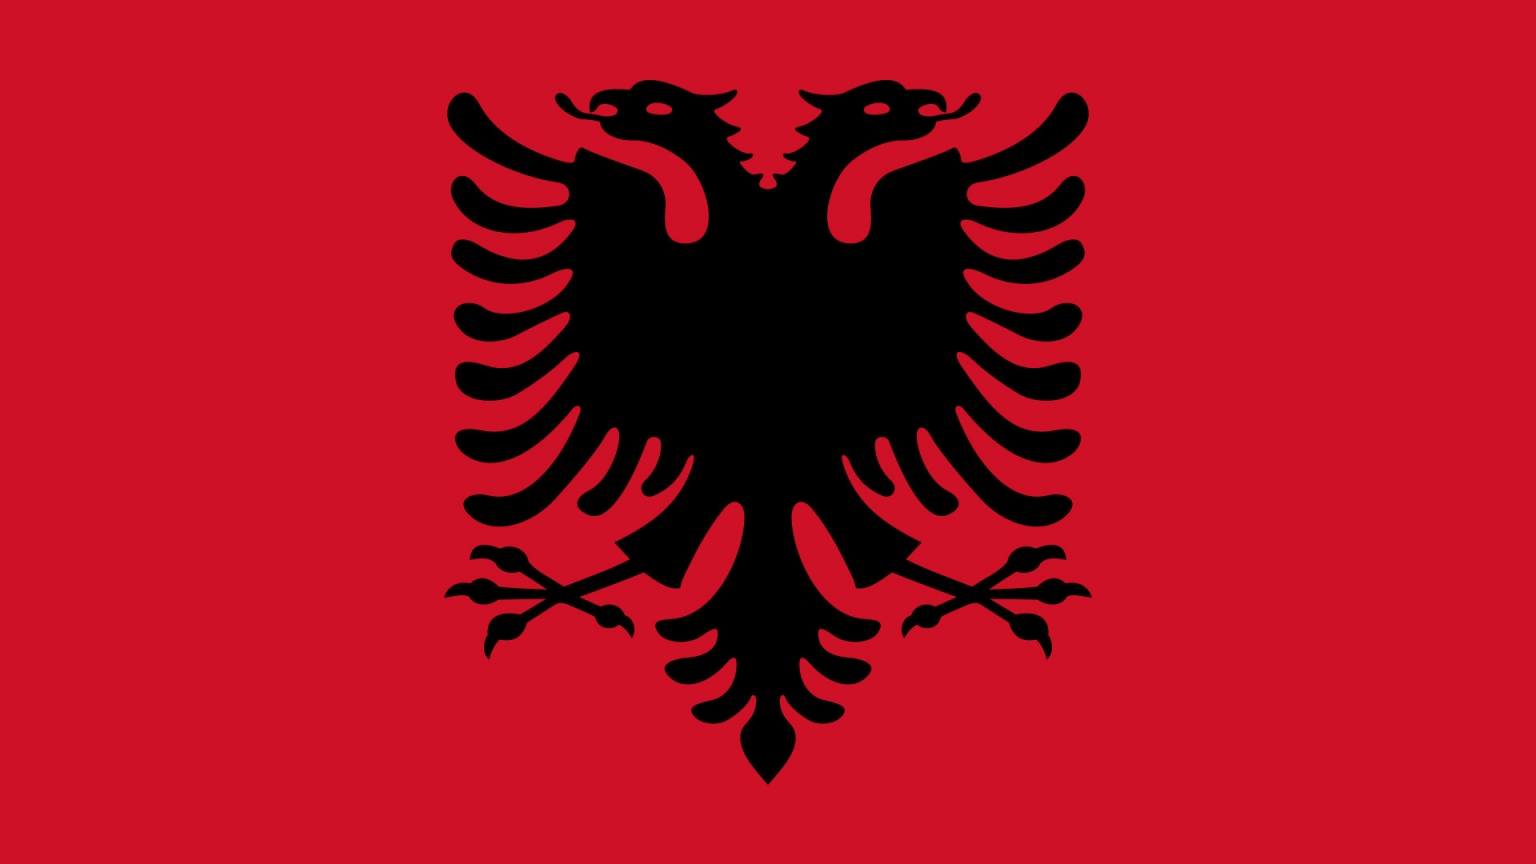 Albania Flag for 1536 x 864 HDTV resolution